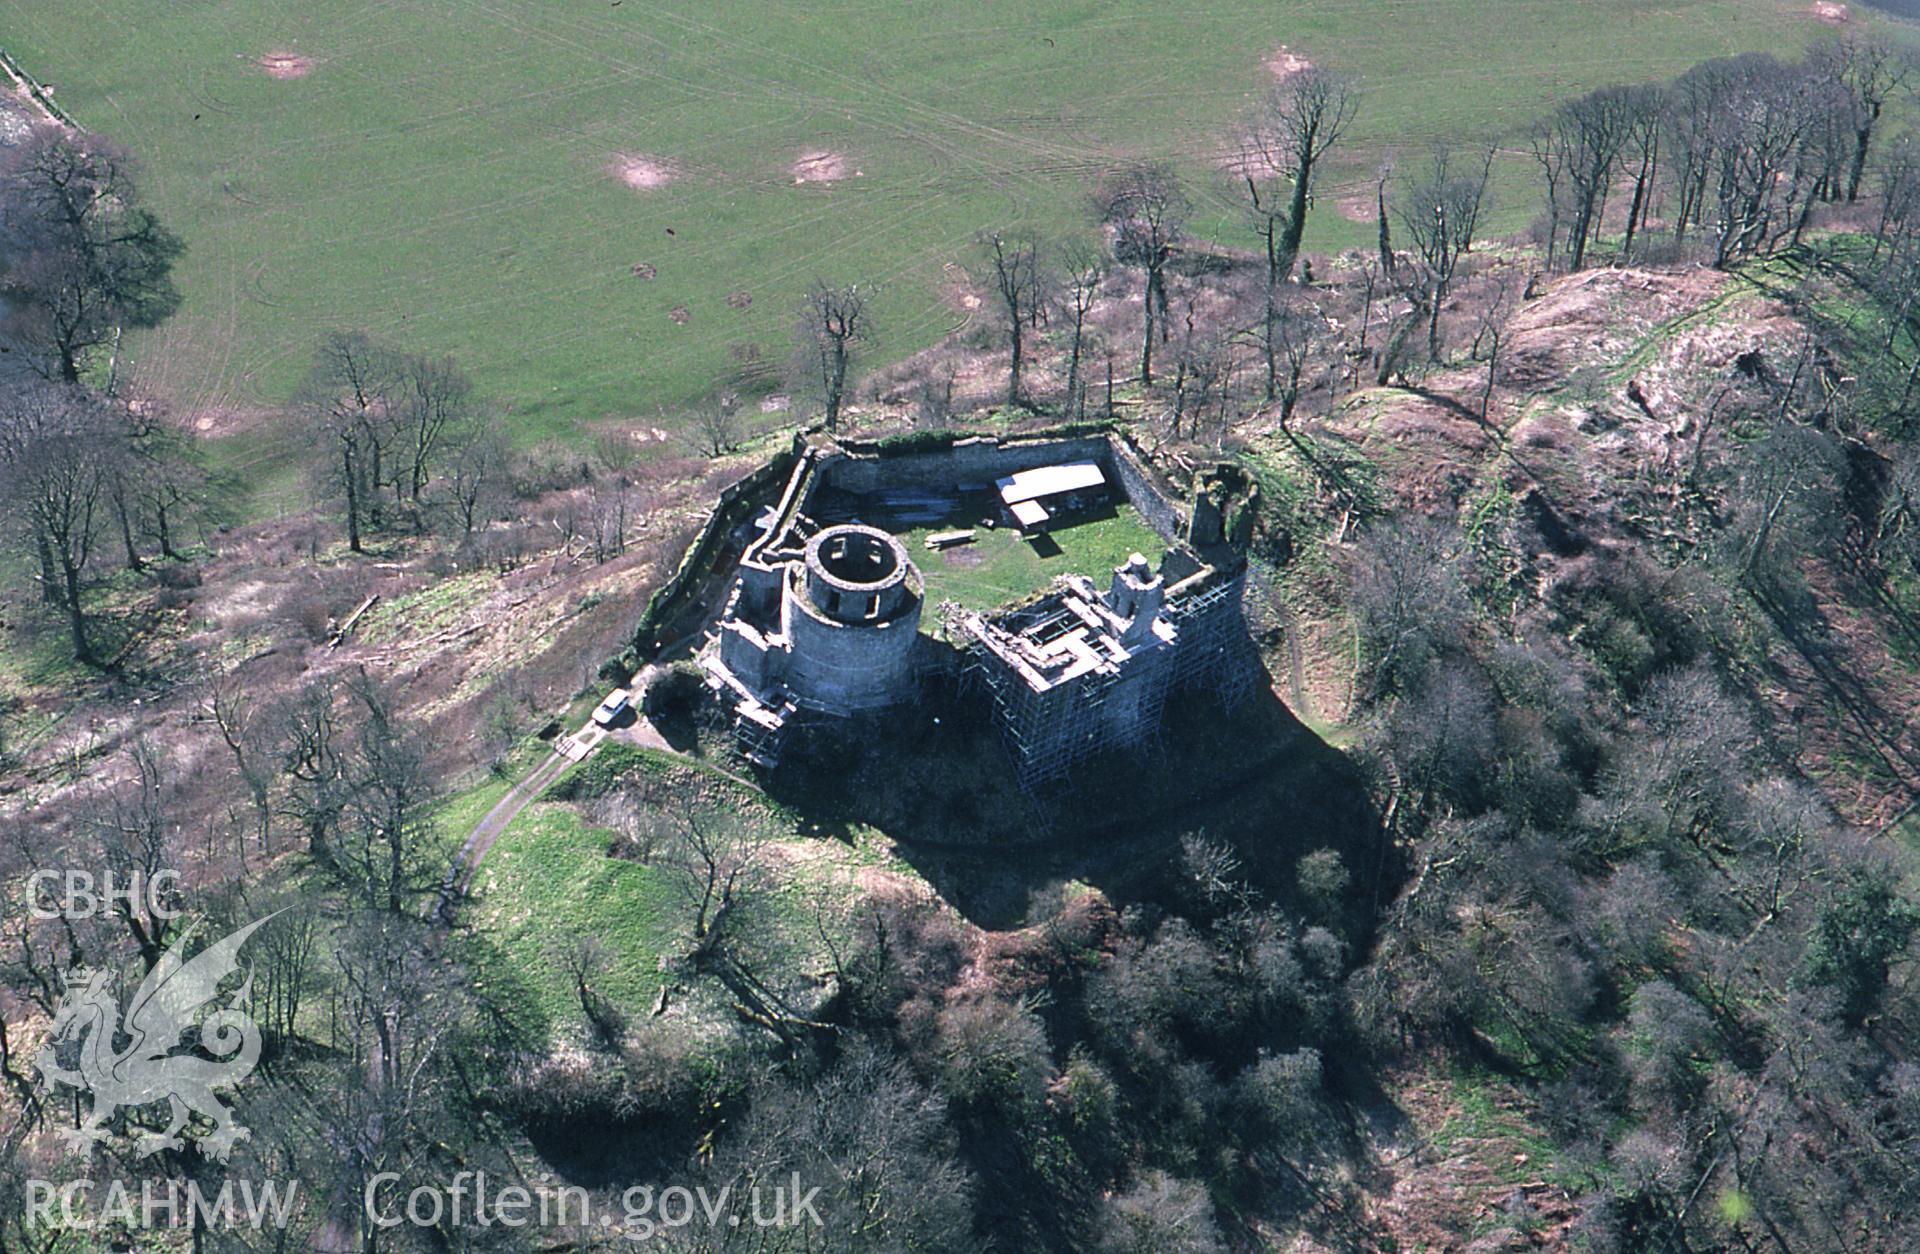 RCAHMW colour oblique aerial photograph of Dinefwr Castle, Llandeilo taken on 29/03/1995 by C.R. Musson